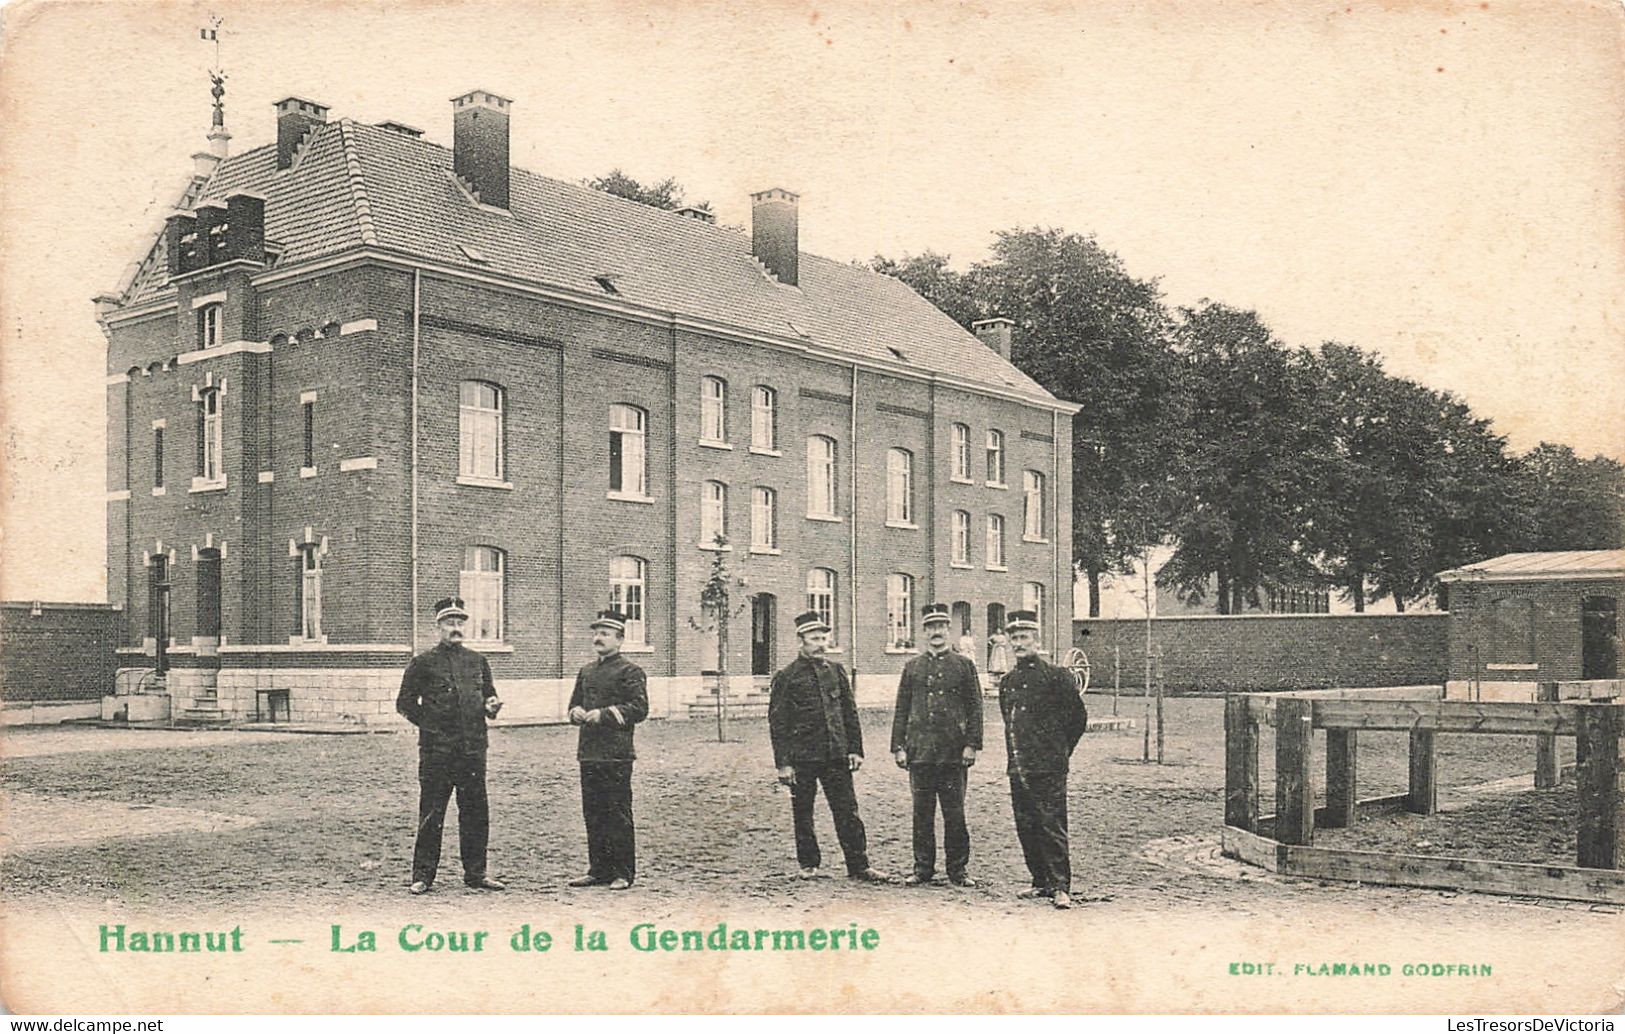 Belgique - La Cour De Gendarmerie - Edit. Flamand Godfrin - Précurseur - Animé - Carte Postale Ancienne - Hannuit